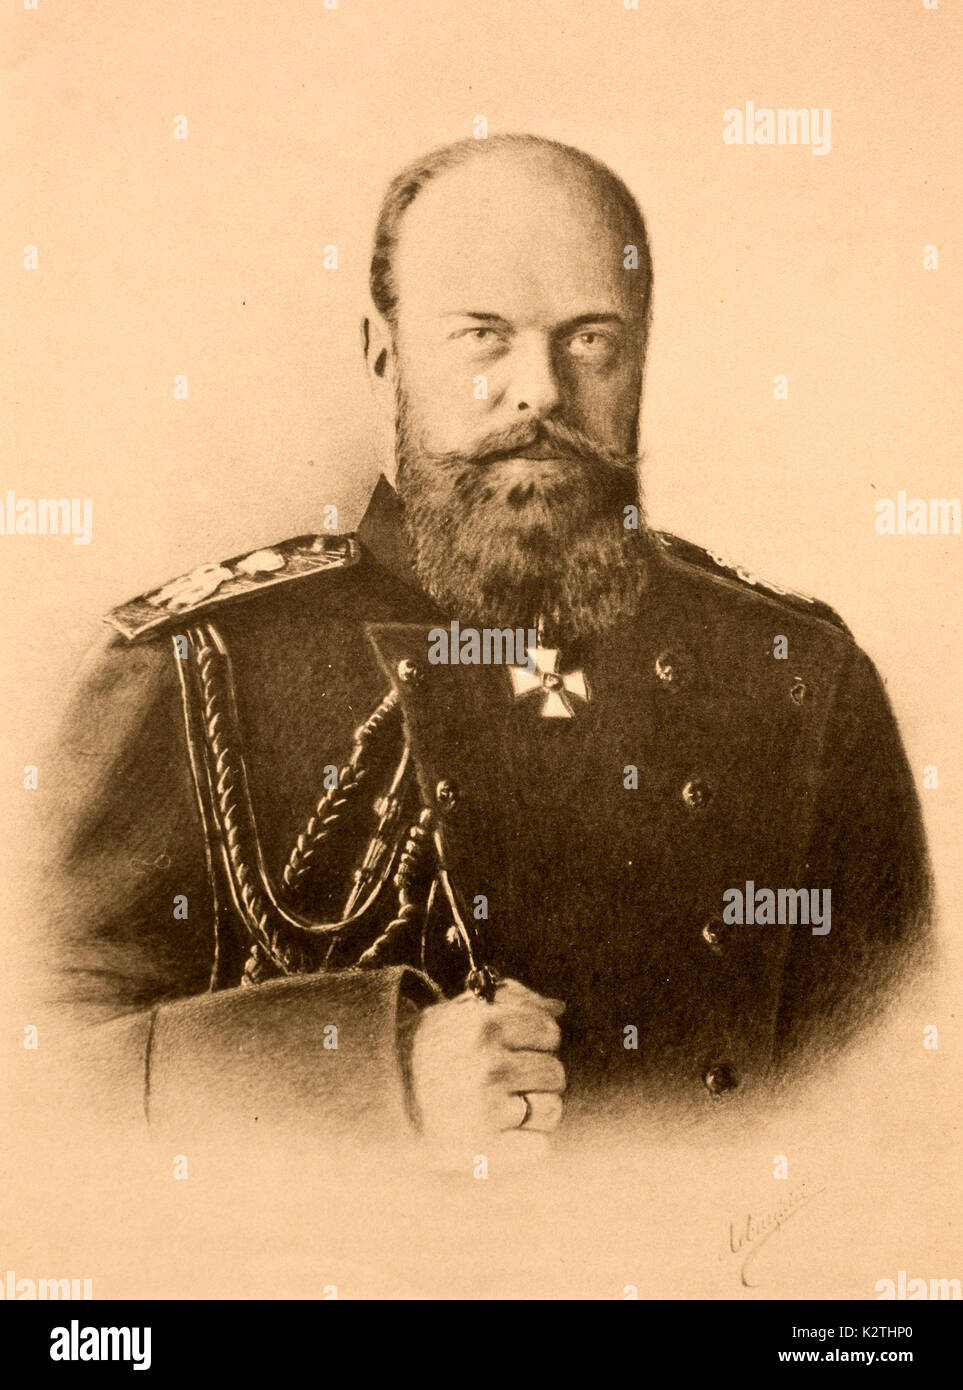 La Russie l'empereur Alexandre III règne zar 13 mars 1881 - 1 novembre 1894 Fondation de la Grande Auguste Artisan de fer de Sibérie Banque D'Images